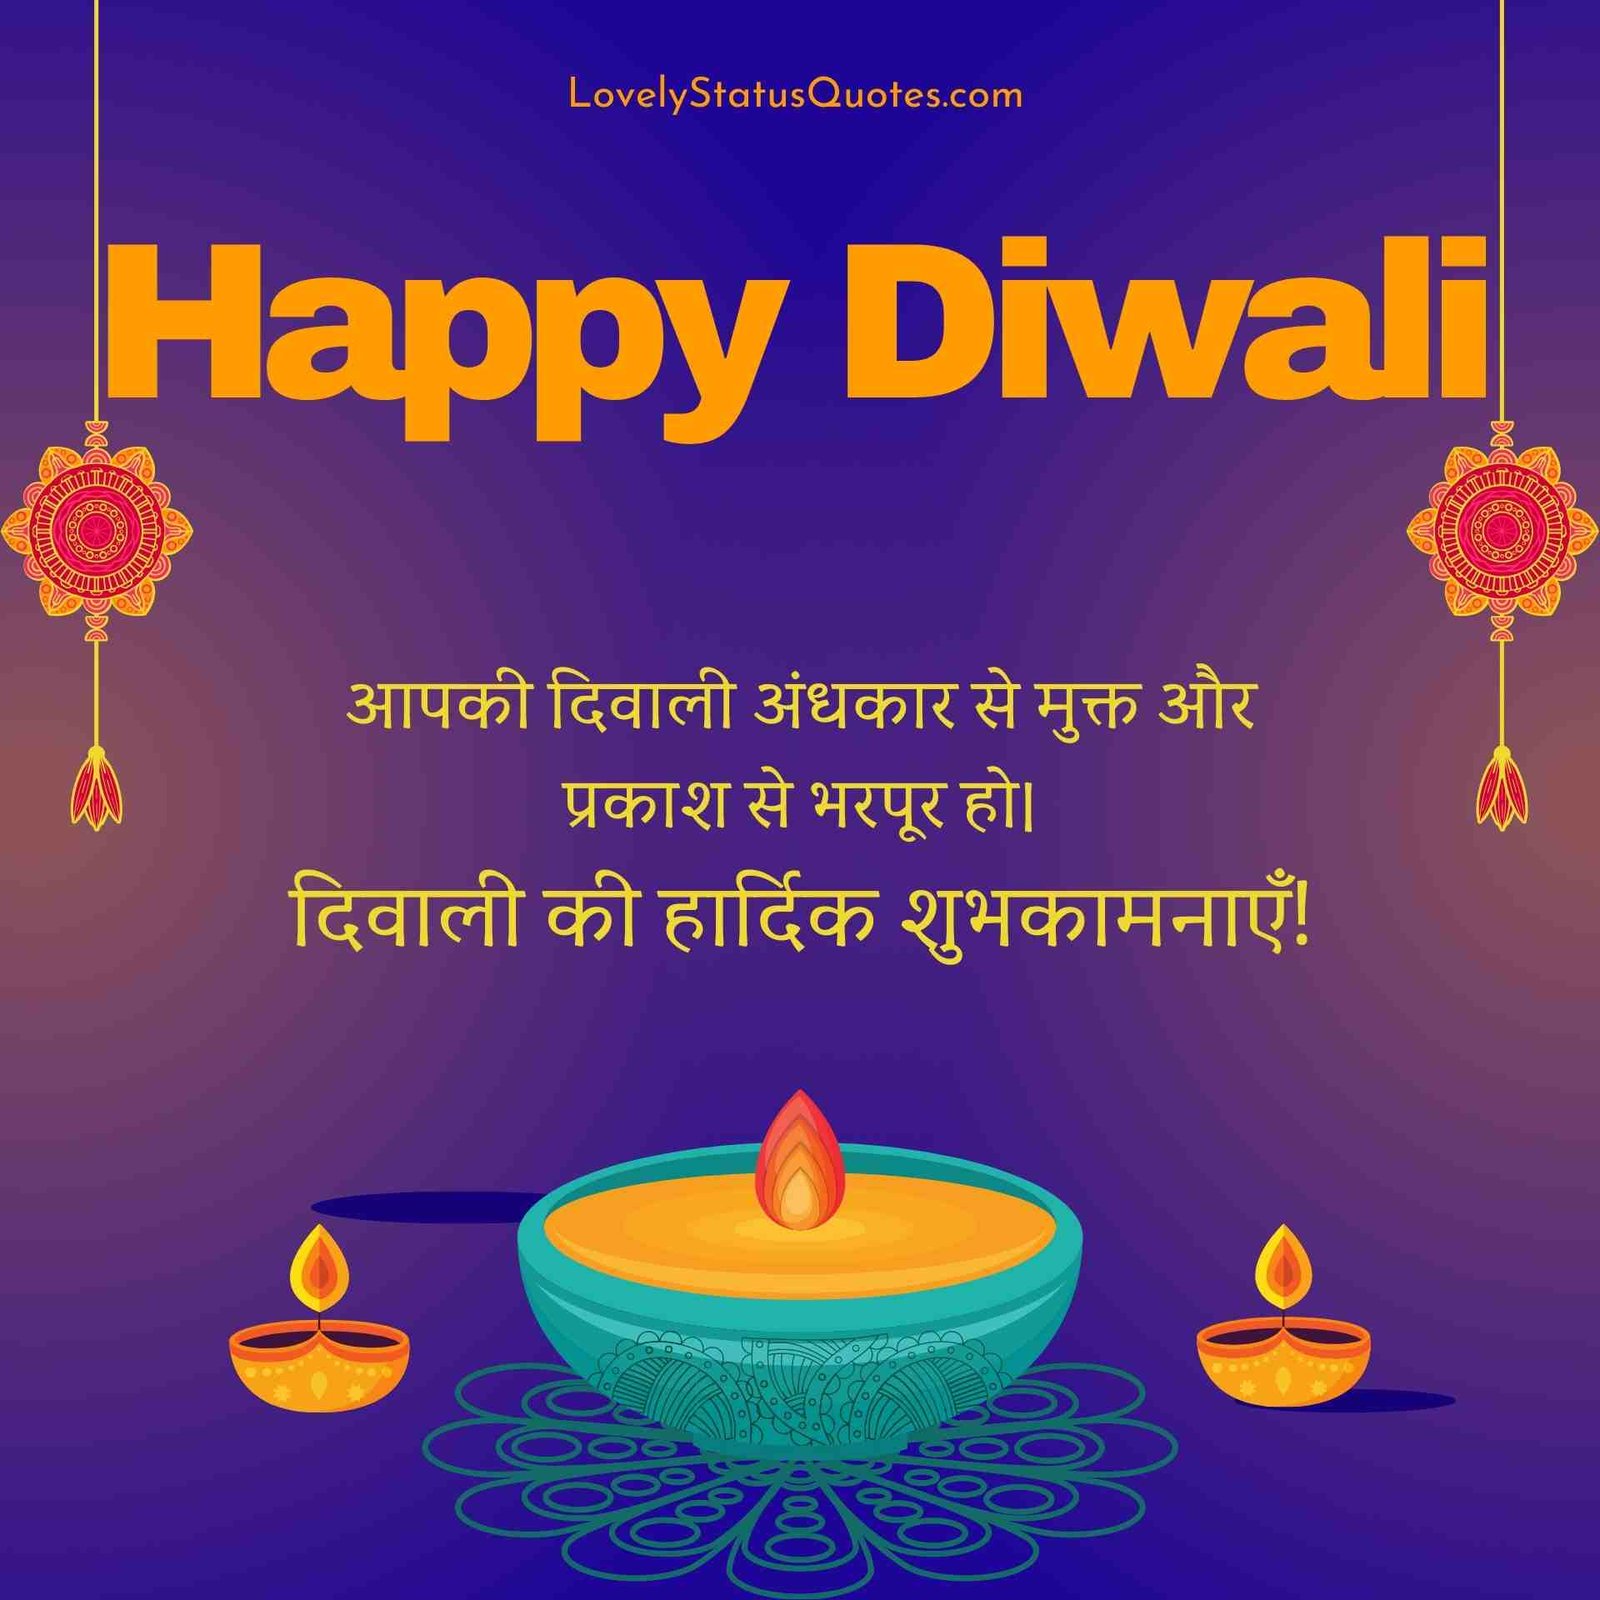 Happy diwali images wishes hindi